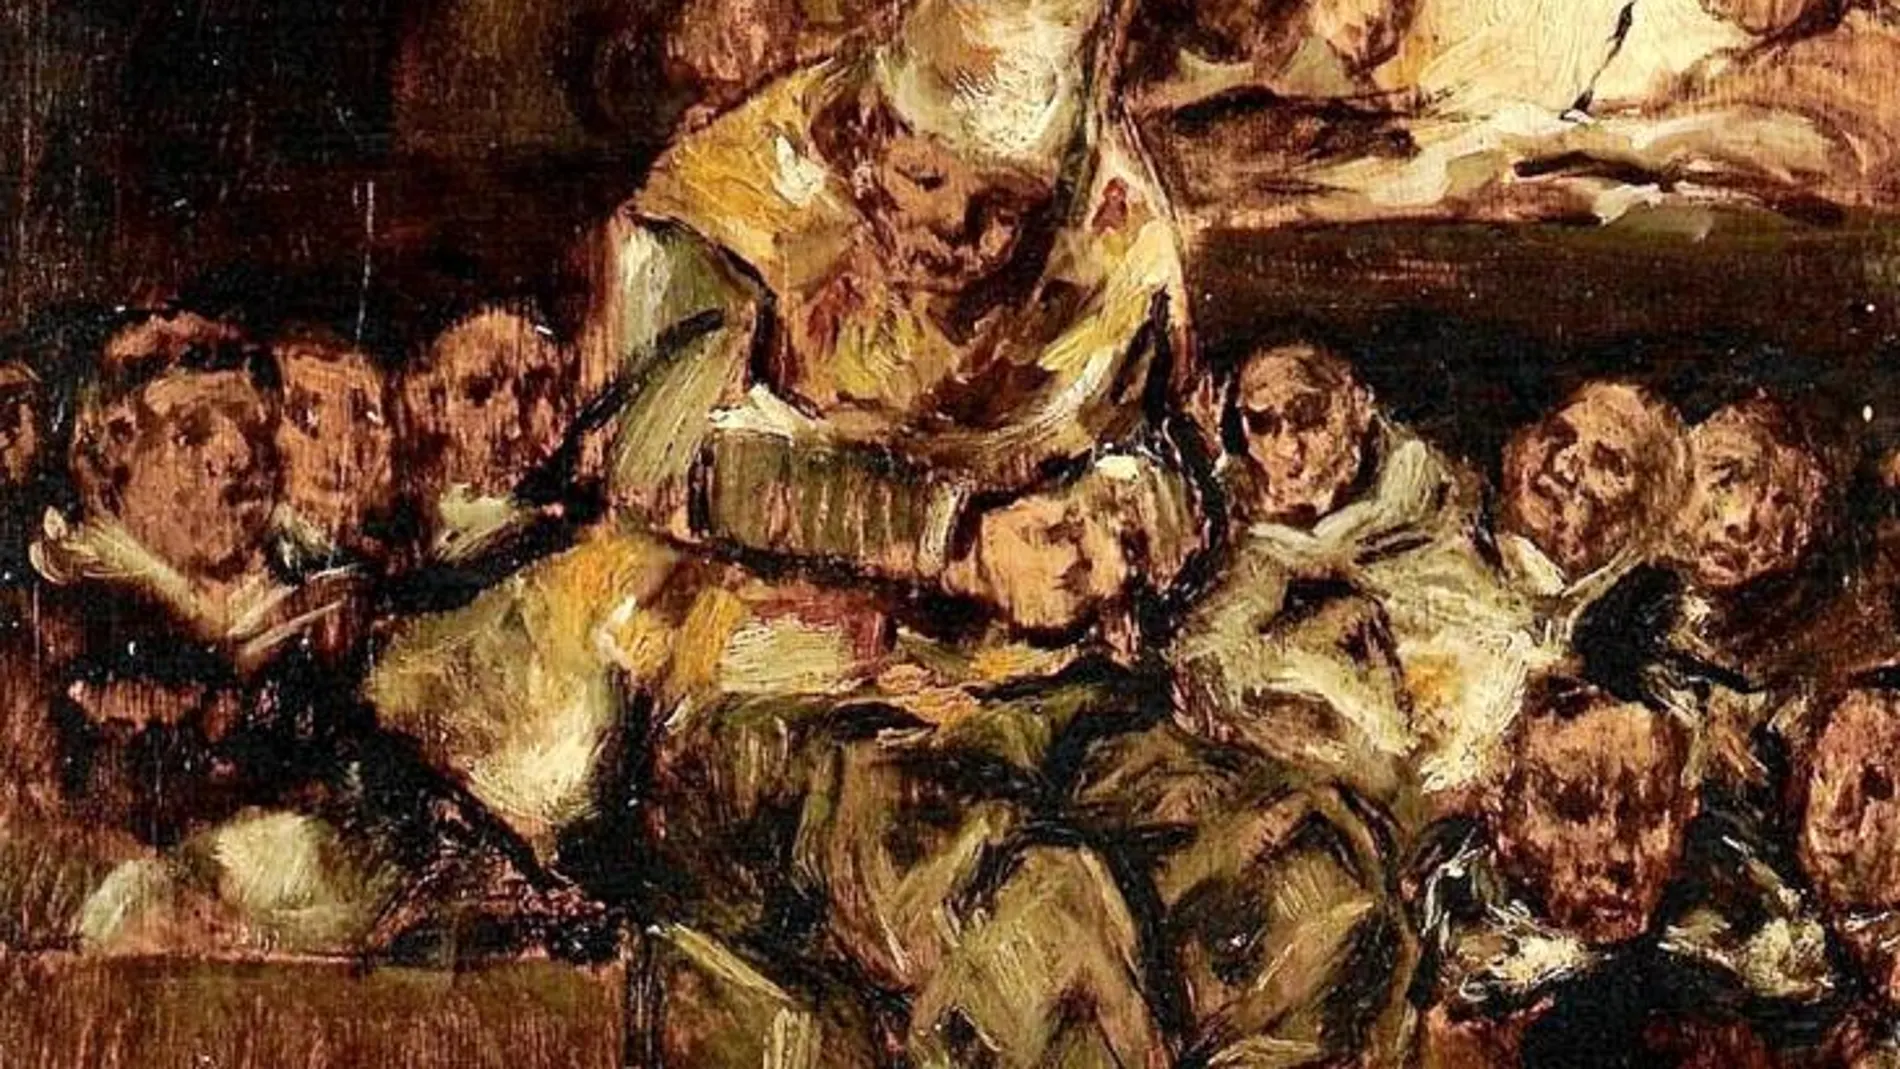 Así retrató Goya un «Auto de fe de la Inquisición», en el que el condenado lleva puesto un sambenito, túnica formada por dos faldones de tela